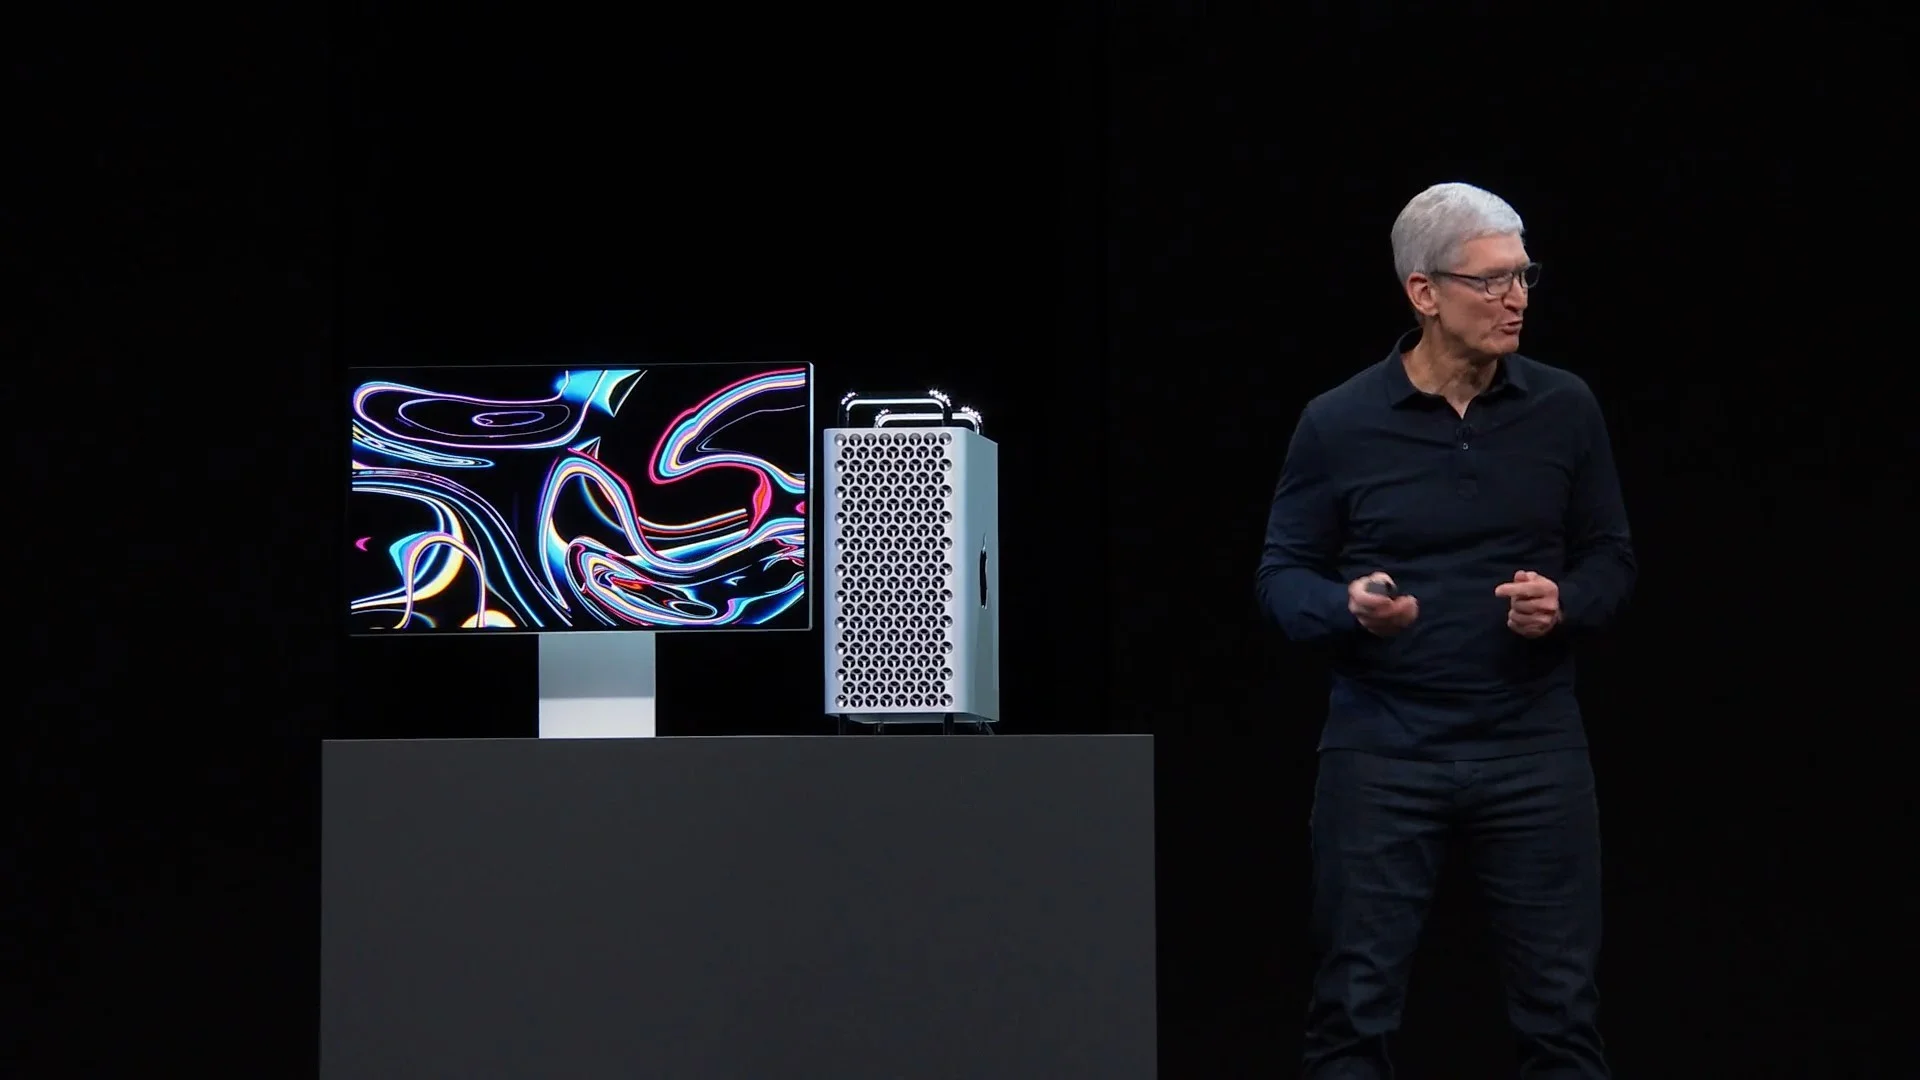 Итоги WWDC 2019: закрытие iTunes, компьютер по цене квартиры, отдельные ОС для Apple Watch и iPad - фото 6